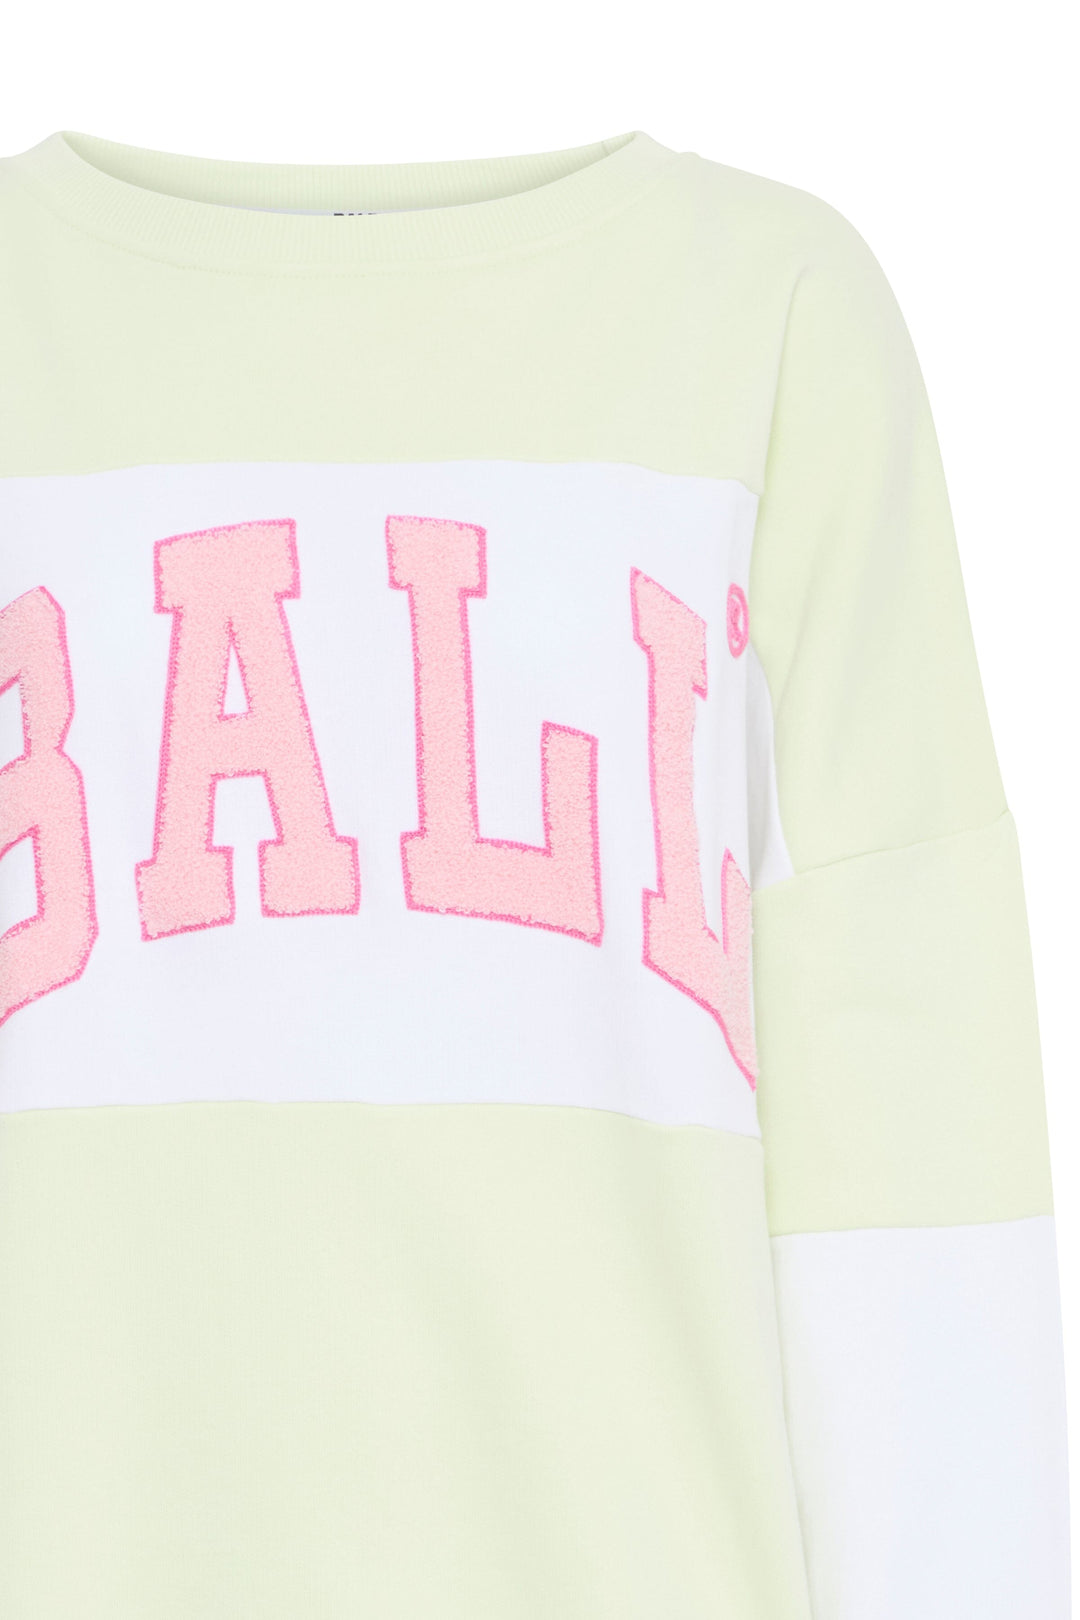 Ball - O. Zidney Sweatshirt - 120721 Lemonade Sweatshirts 